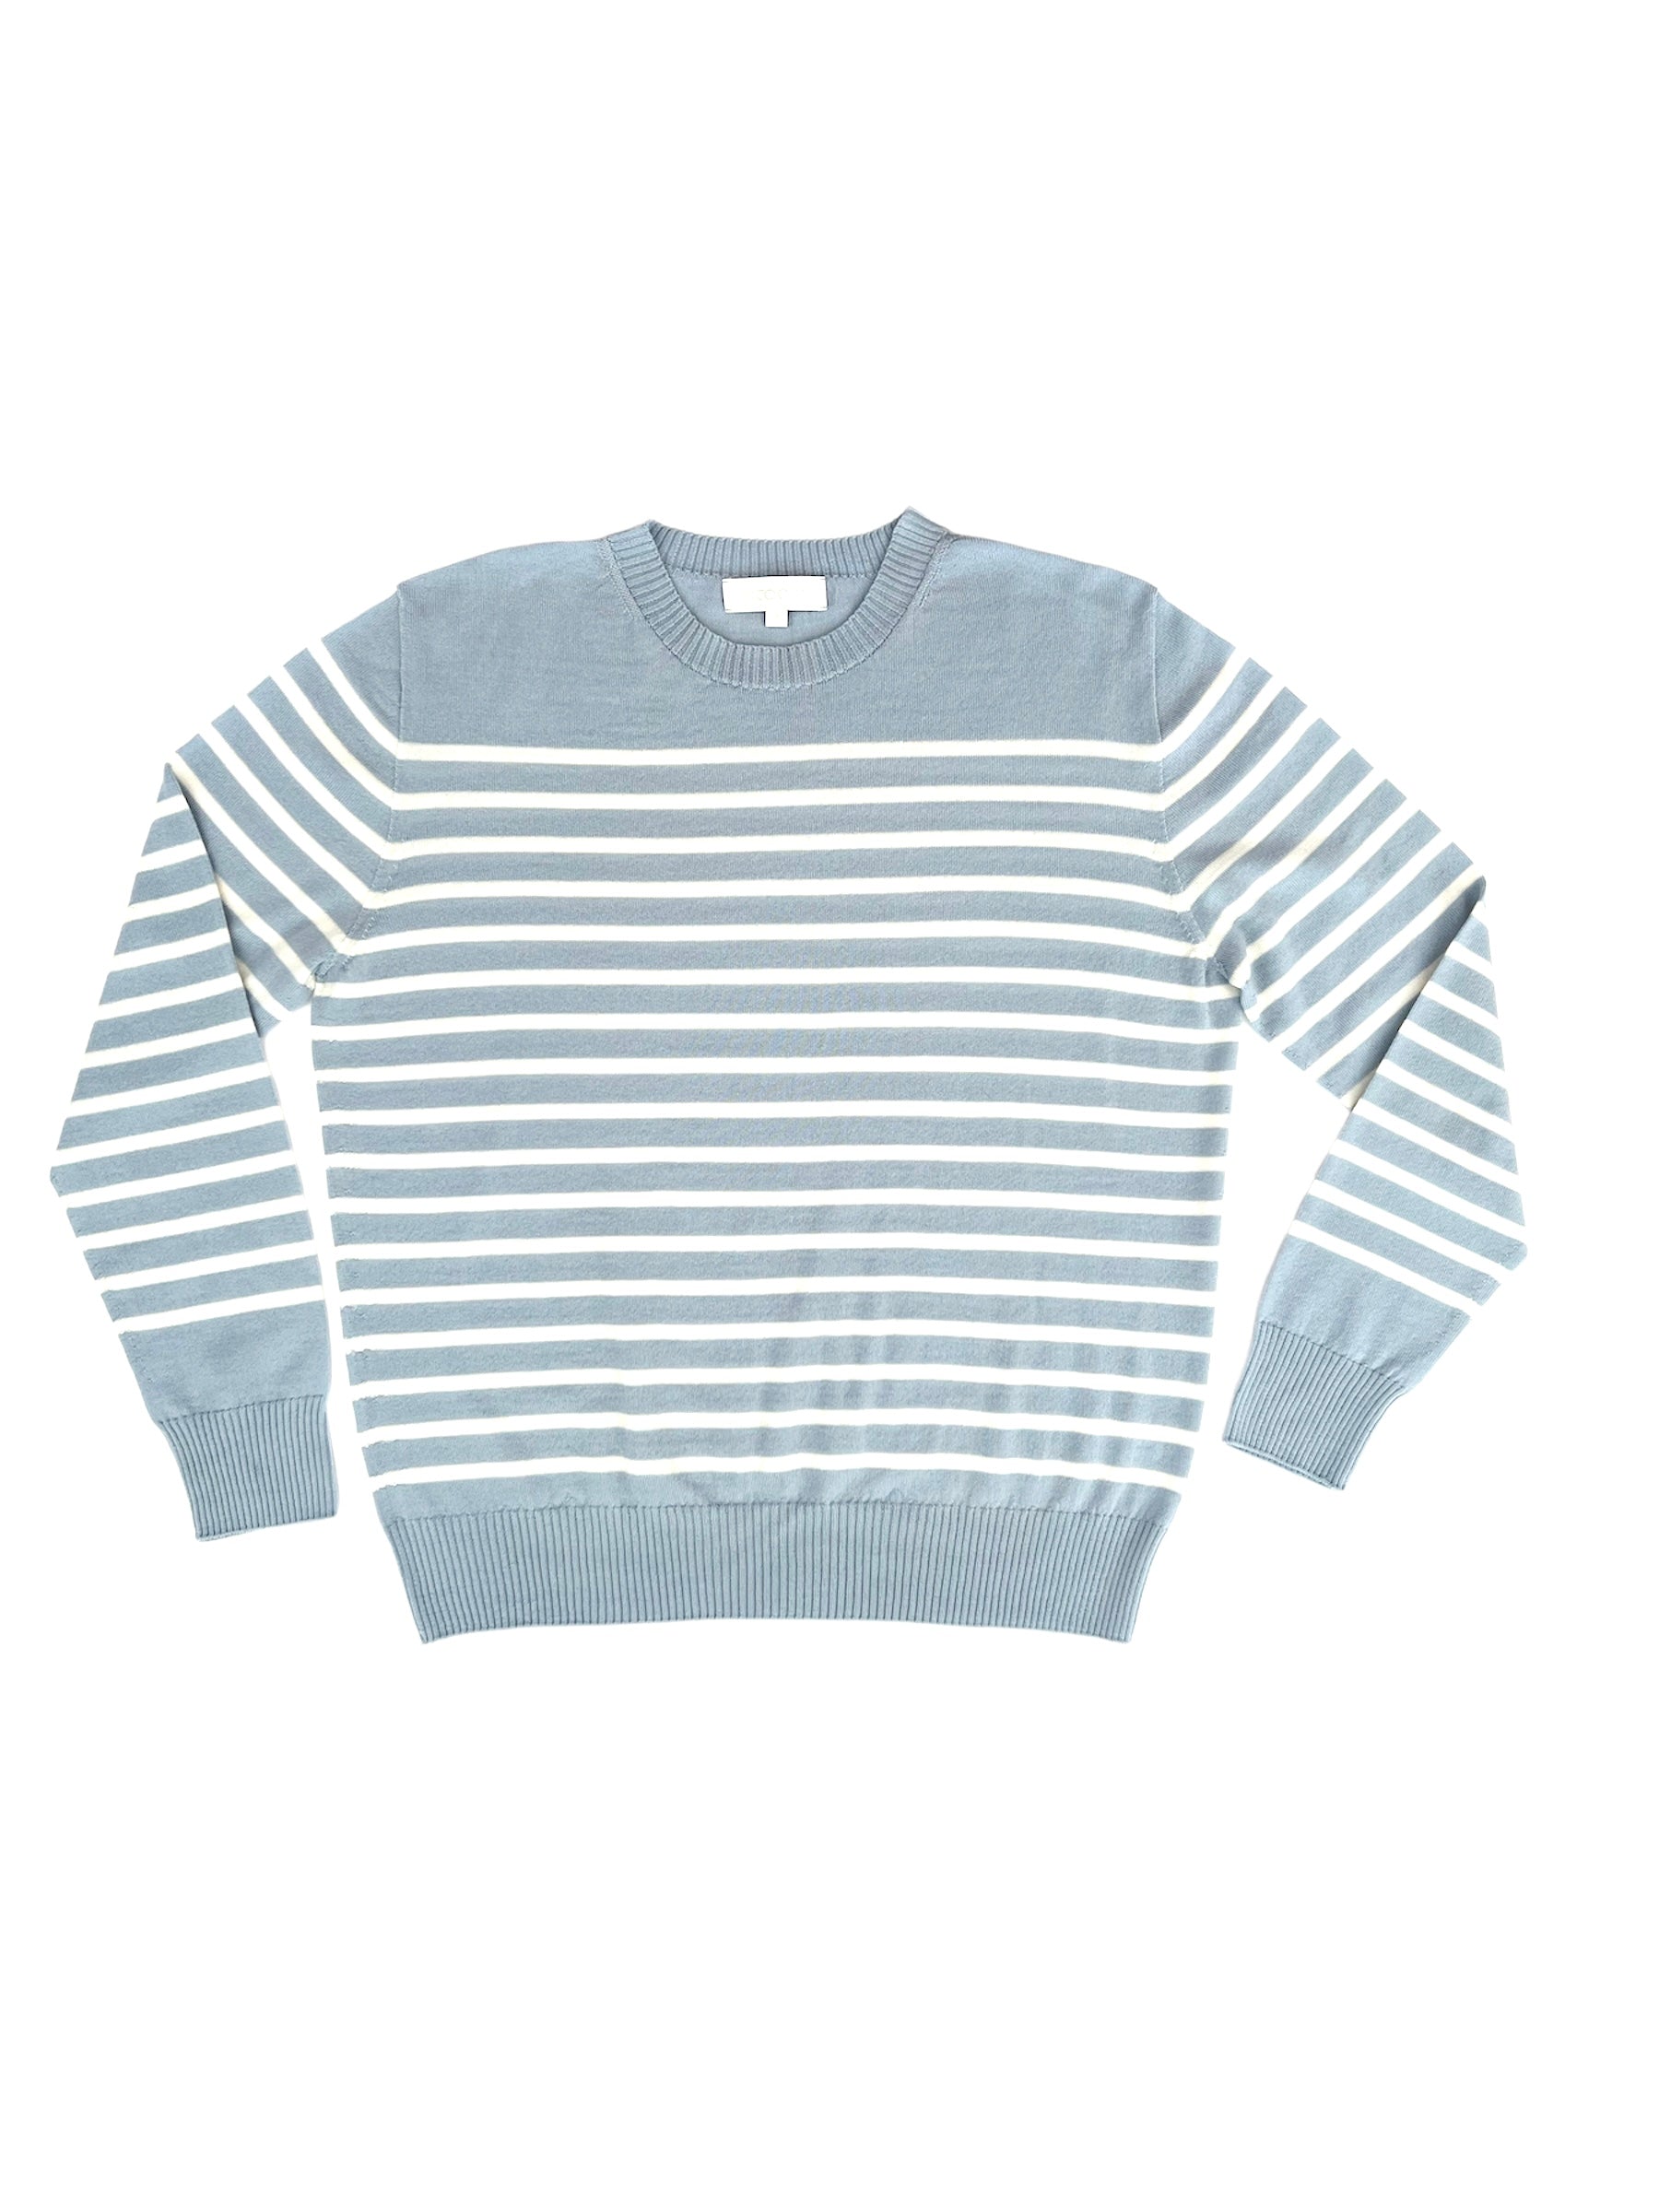 montauk mens breton stripe sweater in cloud